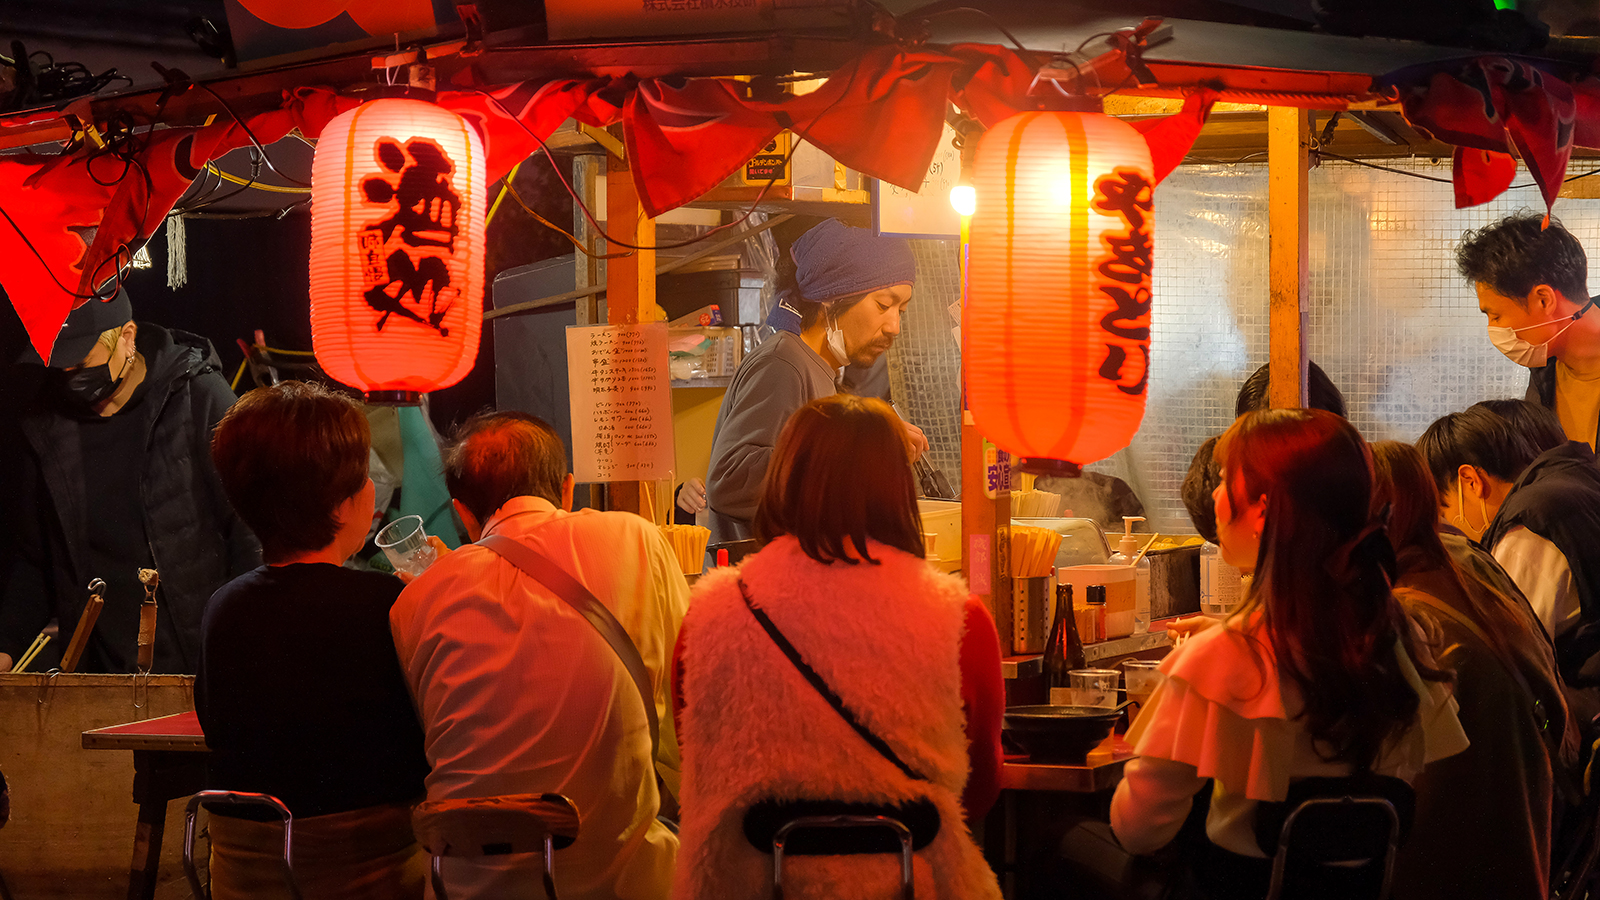 屋台だけじゃない─「福岡」で訪れるべき8ヵ所を米紙記者がチョイス | もつ鍋、バー、音楽 語りつくせぬその魅力